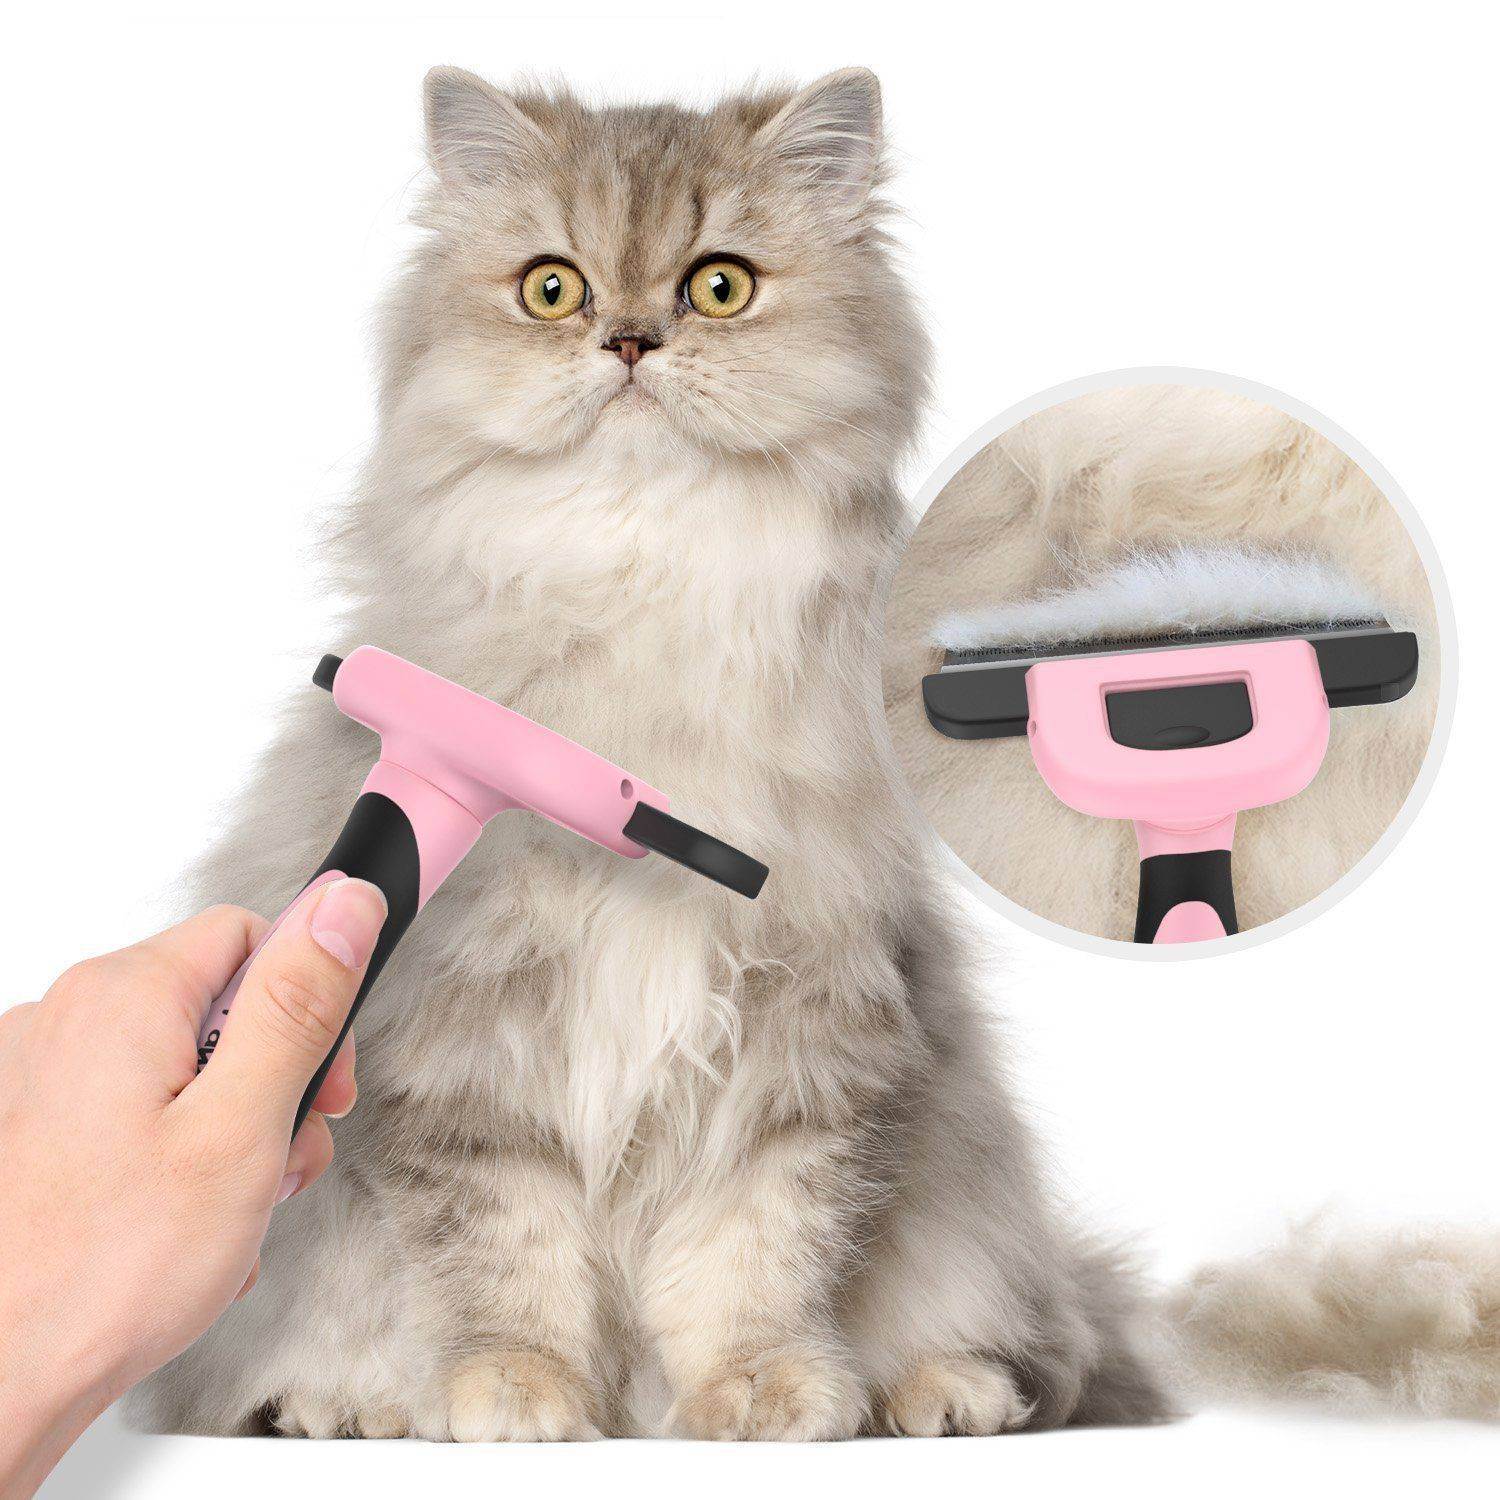 Как подстричь шерсть коту машинкой и ножницами самому